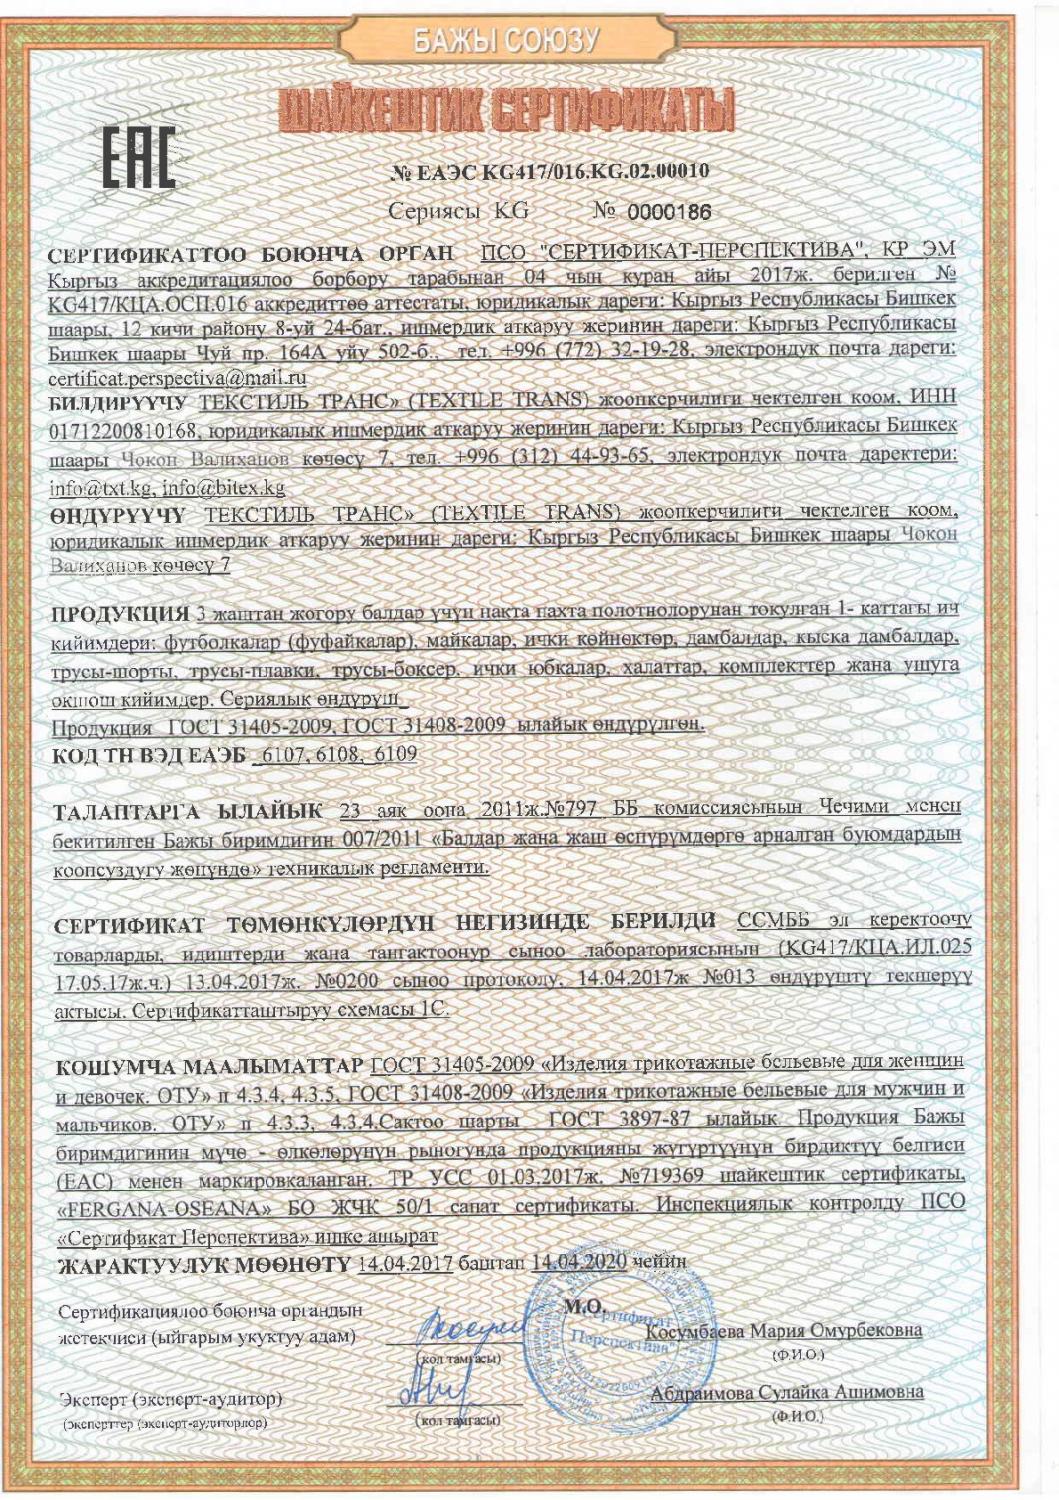 Сертификат соответствия на трикотажные бельевые изделия первый слой для взрослых, девочек и мальчиков (кыргызский язык)